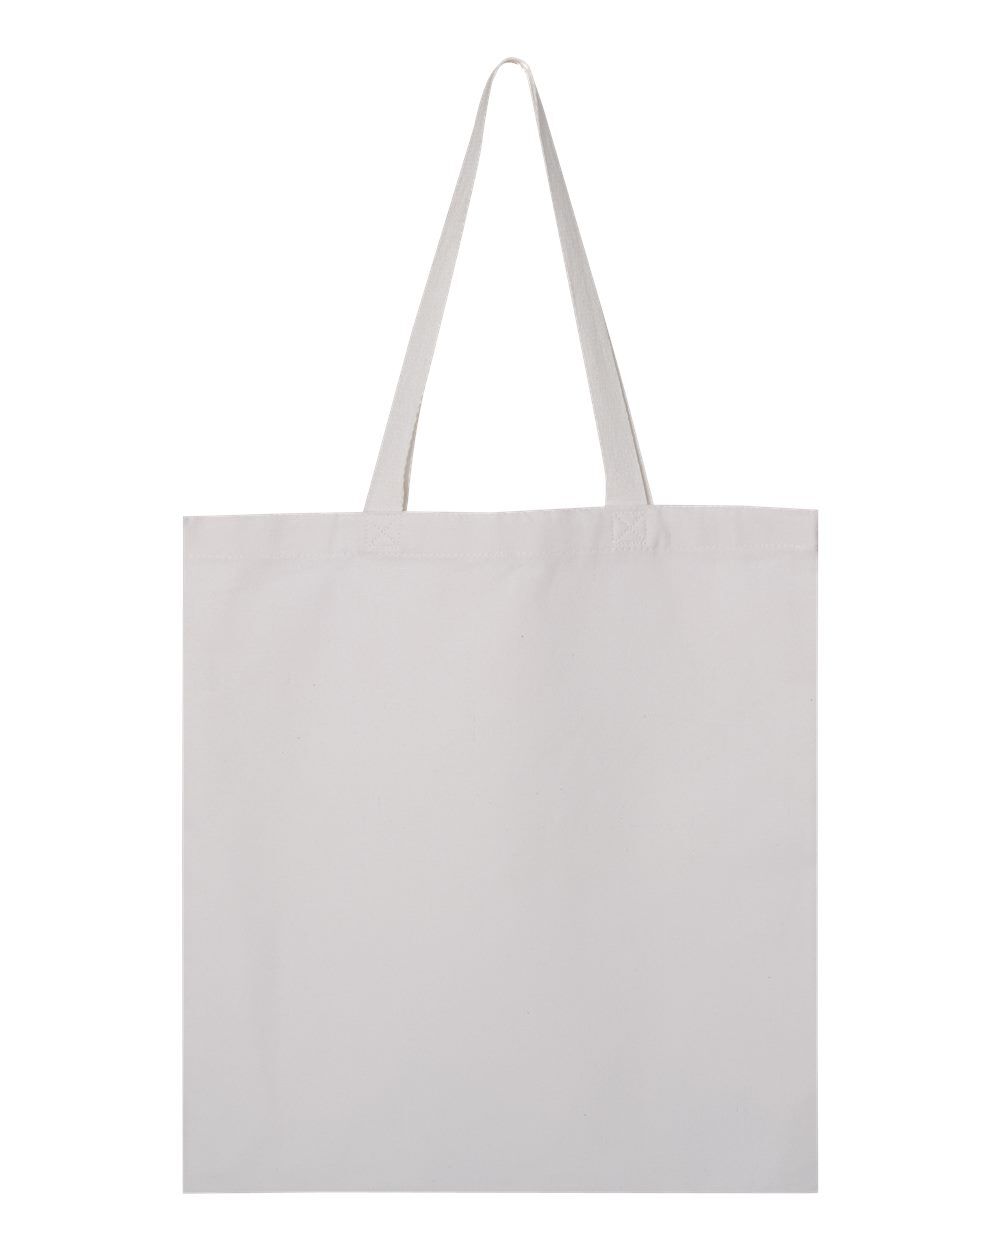 Custom Tote Bag Printing ⋆ Merch38